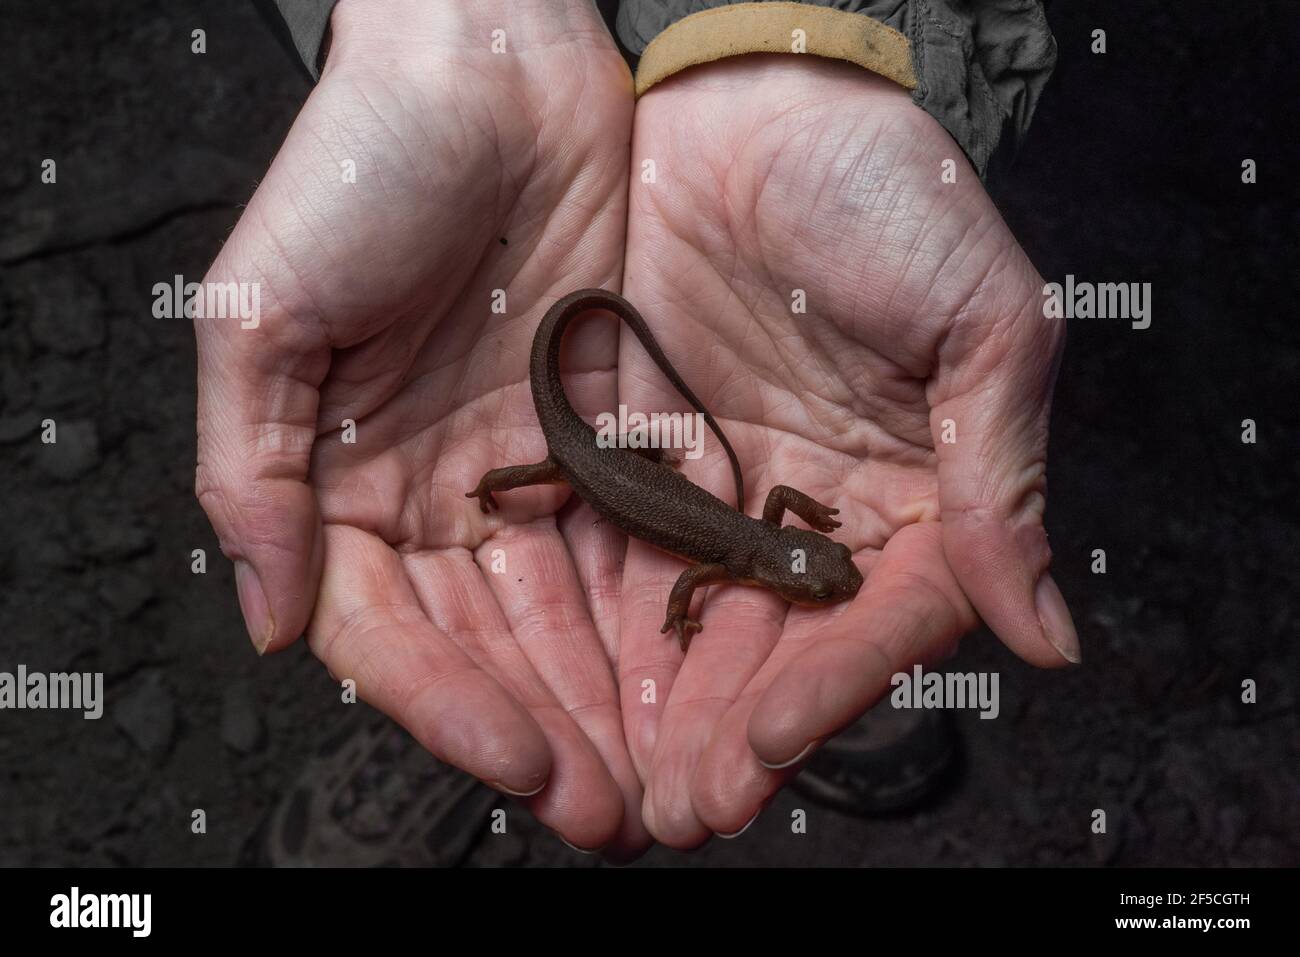 Un nouveau-né de Californie (Taricha torosa) repose dans une main d'observateurs, ces amphibiens contiennent de puissantes toxines s'ils sont consommés. Banque D'Images